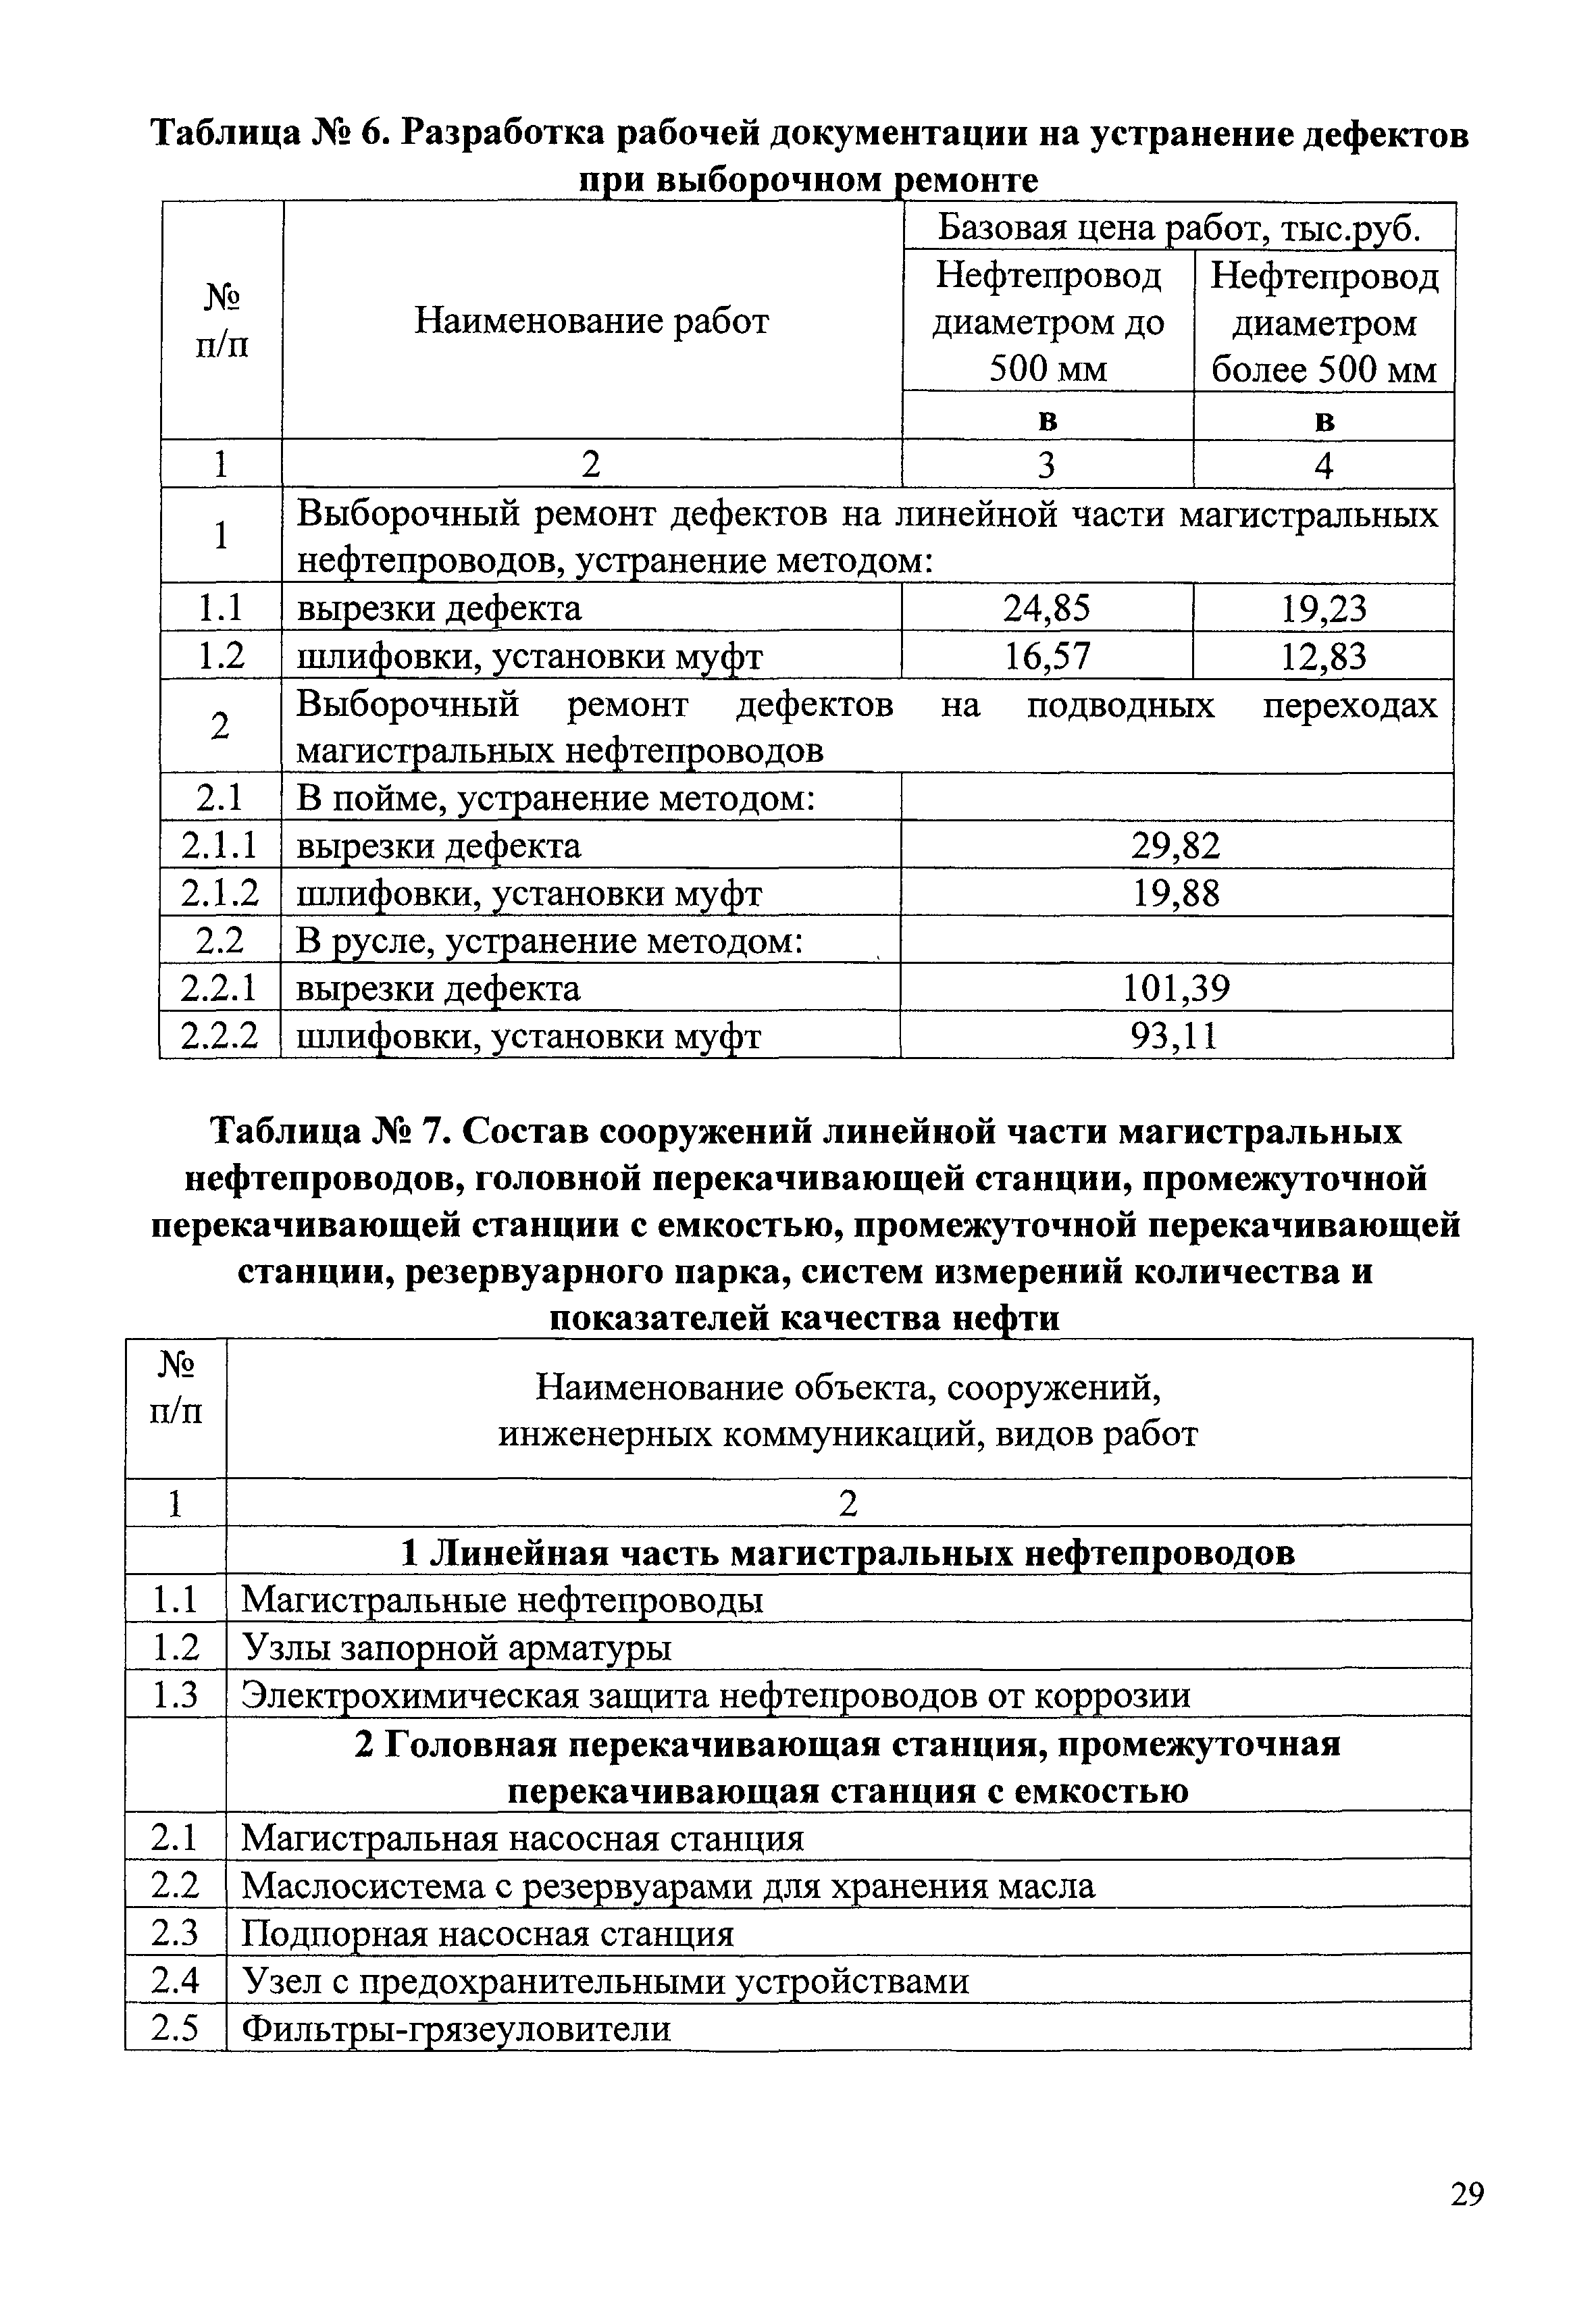 СБЦП 81-2001-08